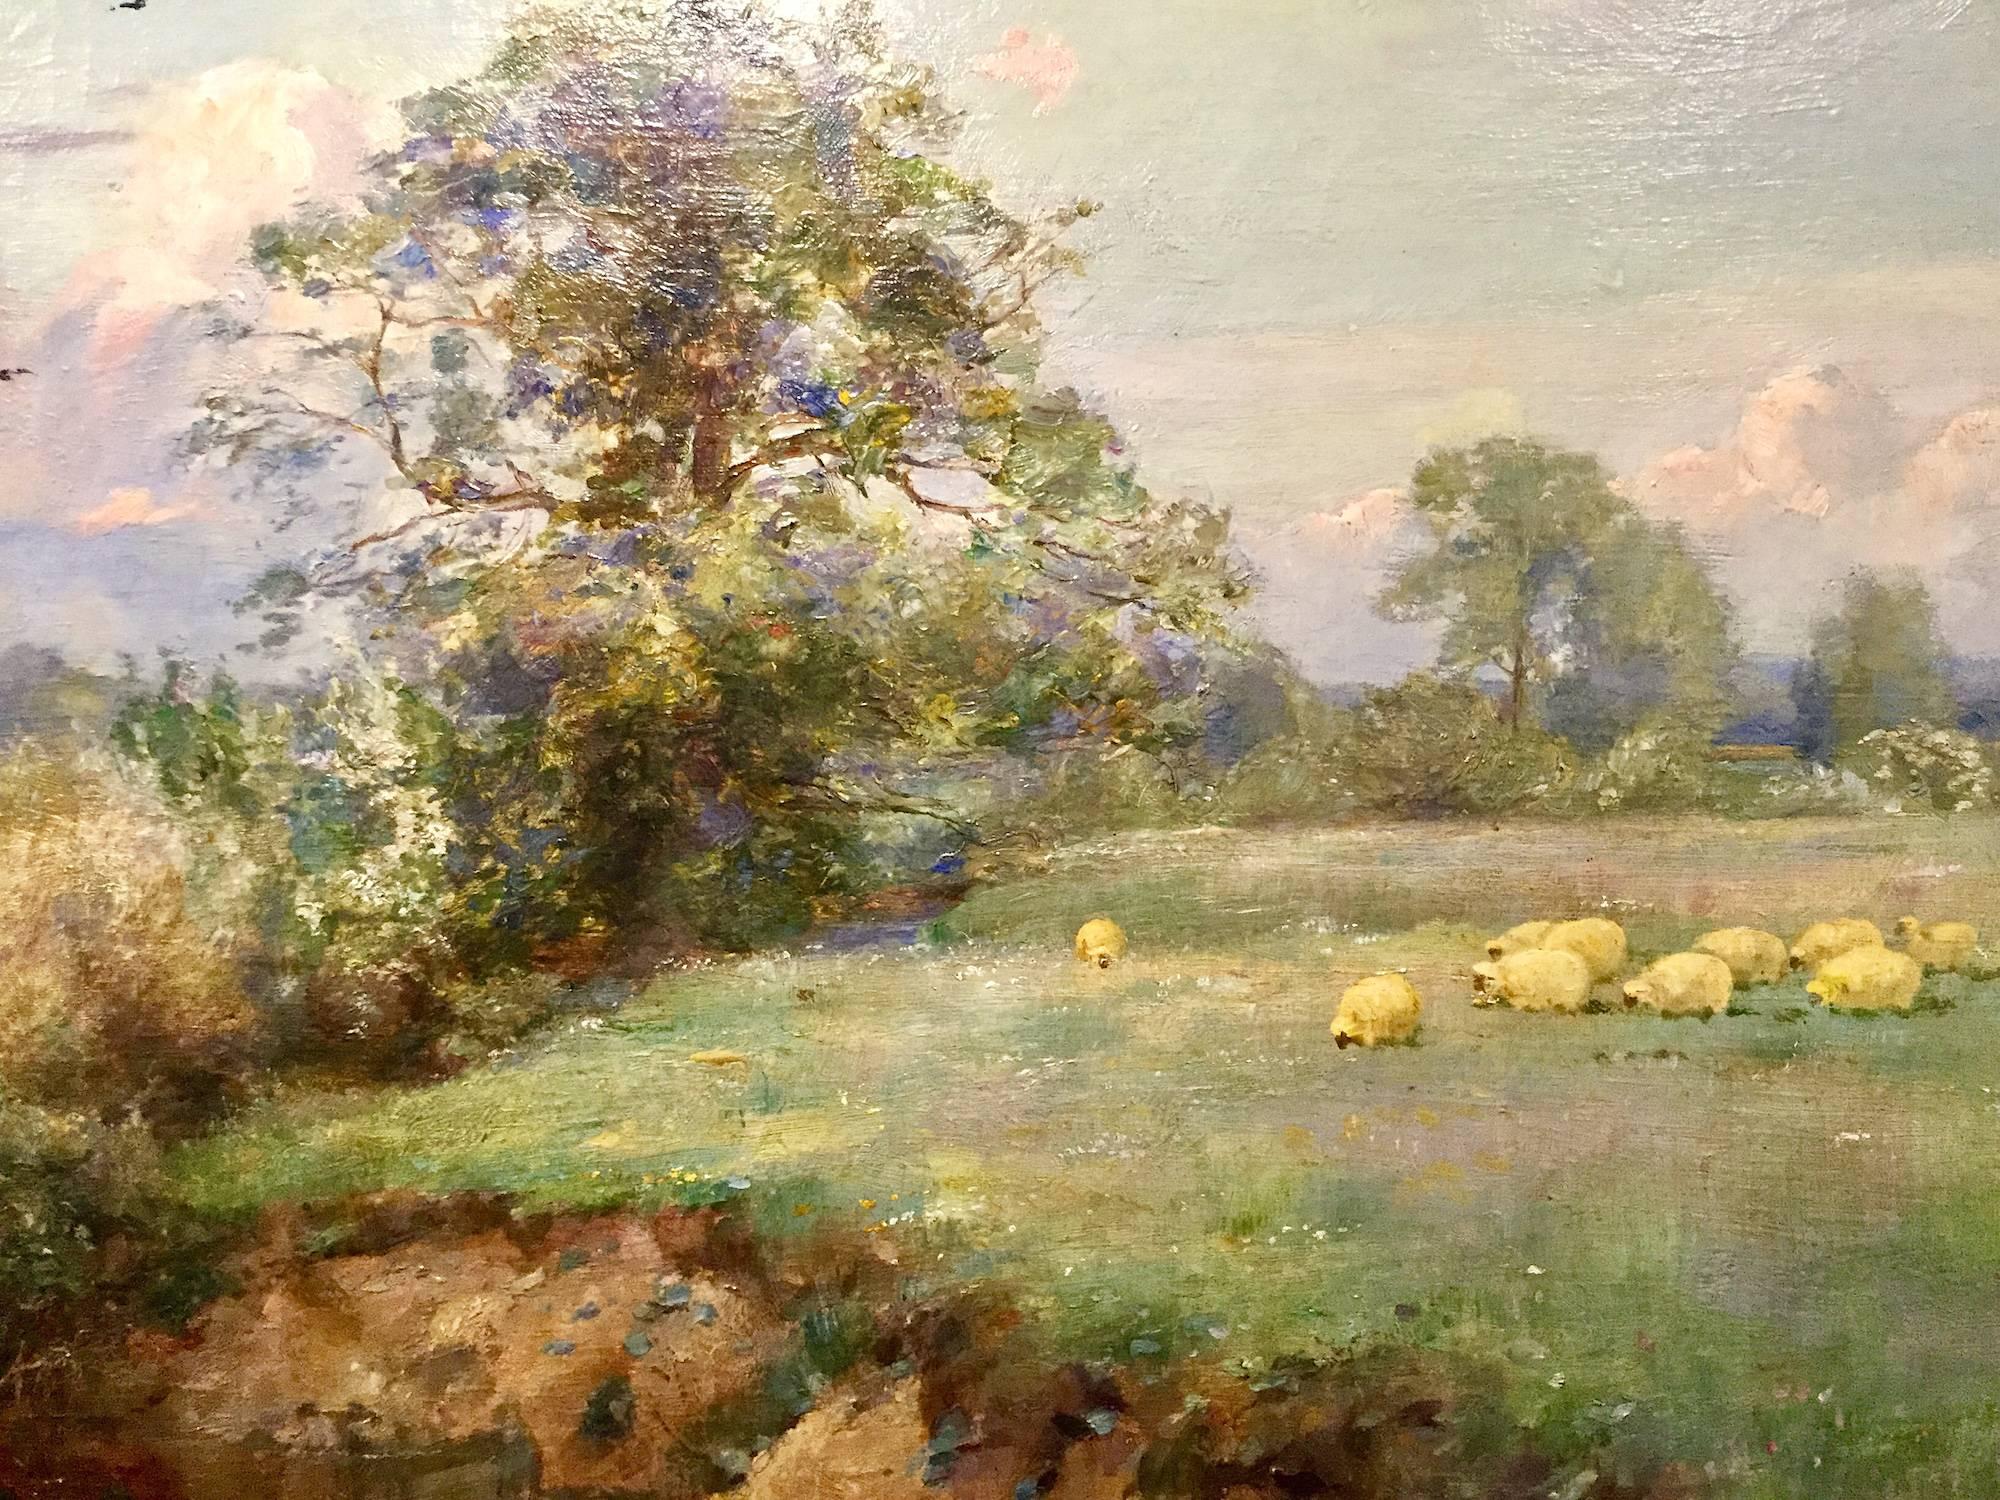 Weidende Schafe in einer Landschaft von Sir Alfred East RA  (1844-1913)
Öl auf Leinwand.
Gesamtgröße mit Gemälde und Rahmen: 134cm x 104cm x 7cm
Eindeutig signiert und datiert 1906
Original vergoldeter Rahmen.

Sir Alfred East wurde am 15. Dezember